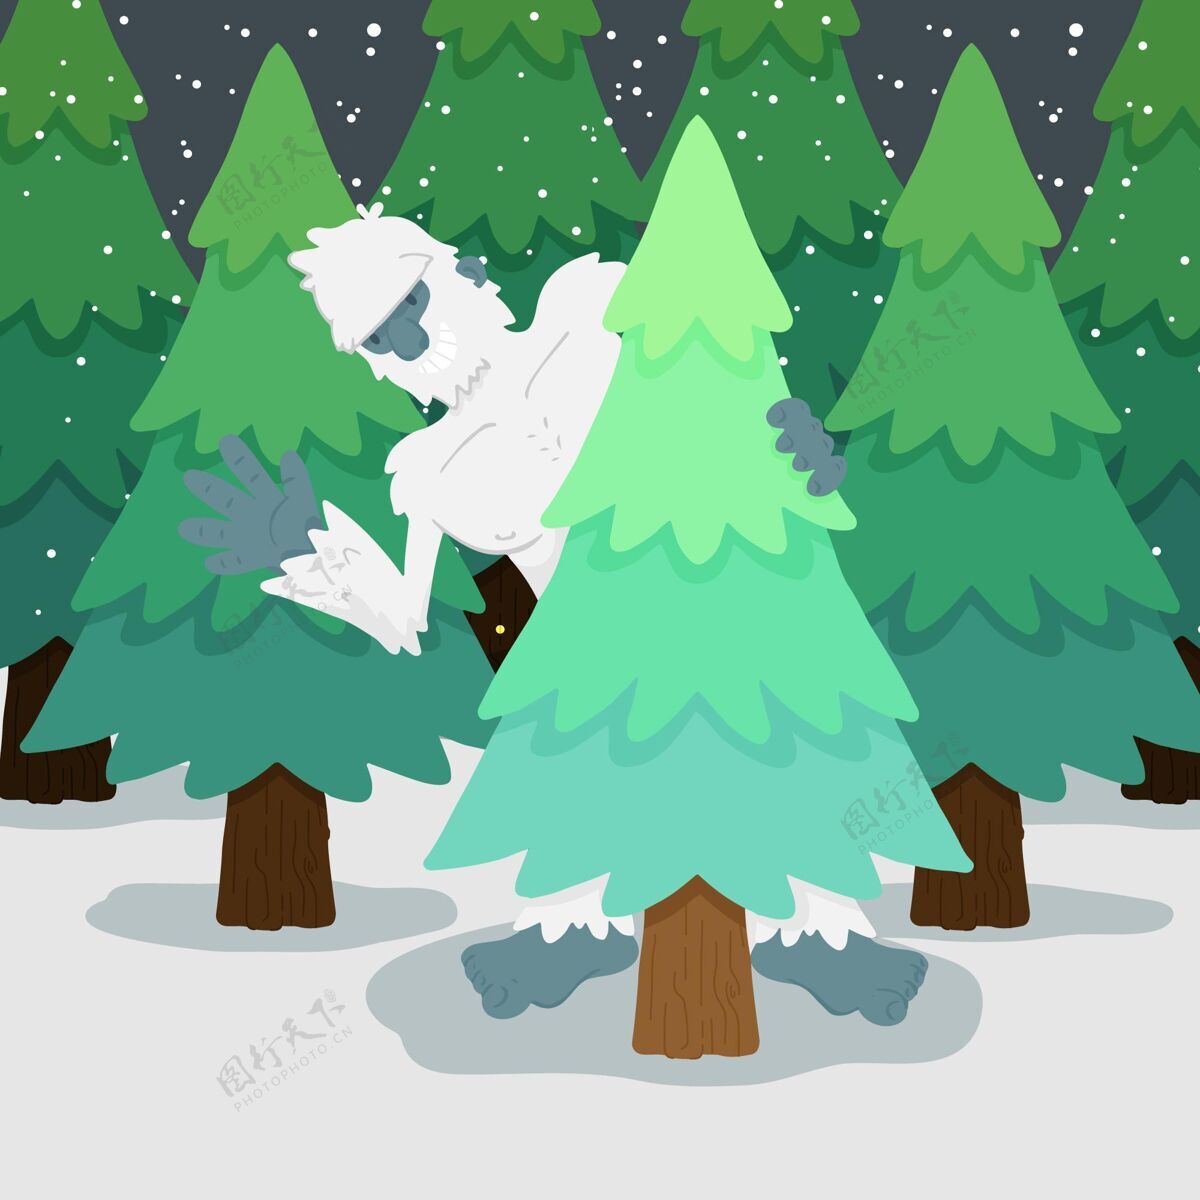 隐藏手绘雪人可恶雪人插图雪人人物插图